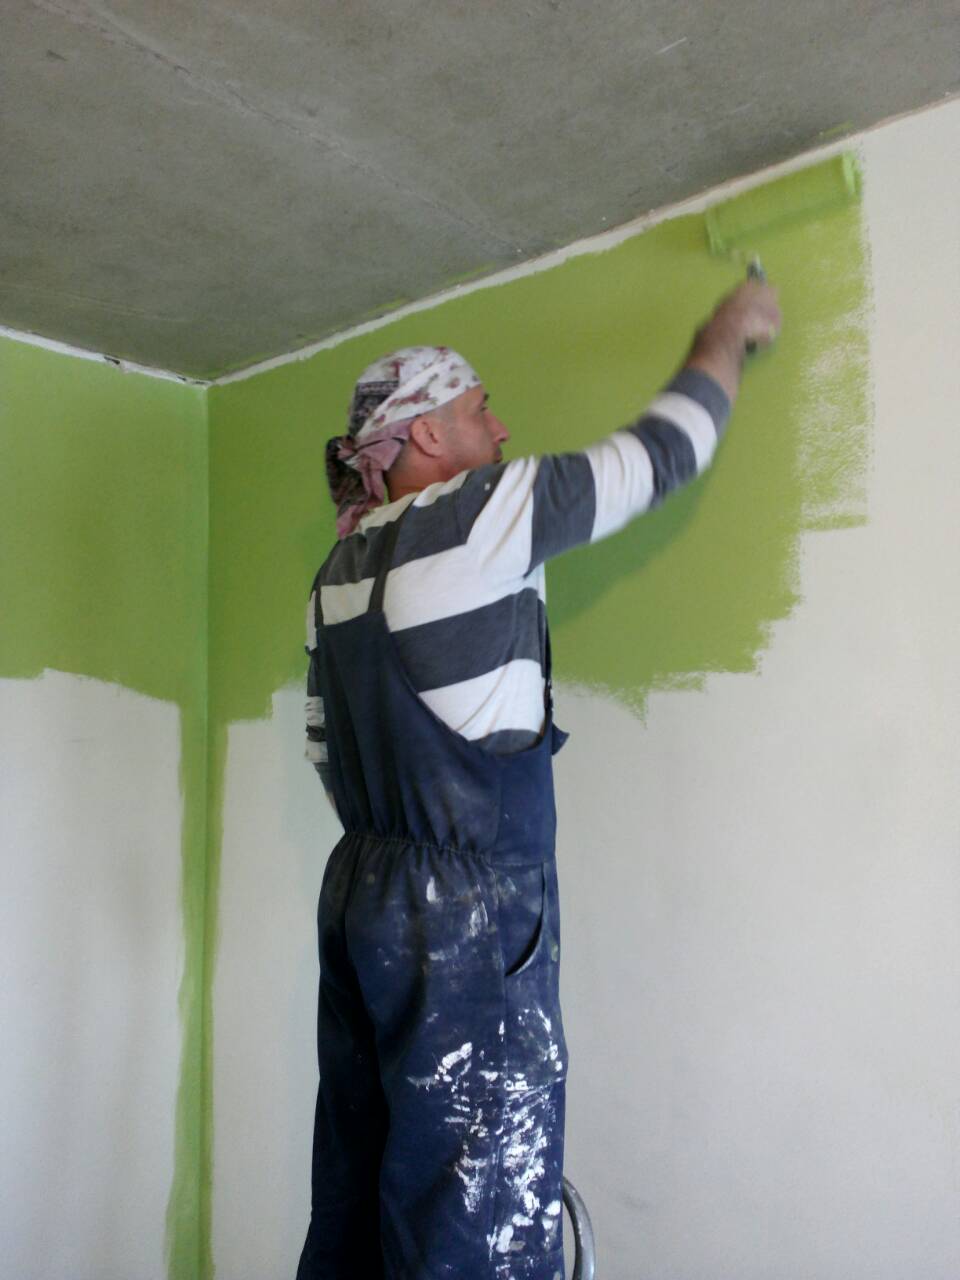 Наш мастер Владимир Александрович красит стены которые сам и выровнял. Заказчикам нравится его работа.